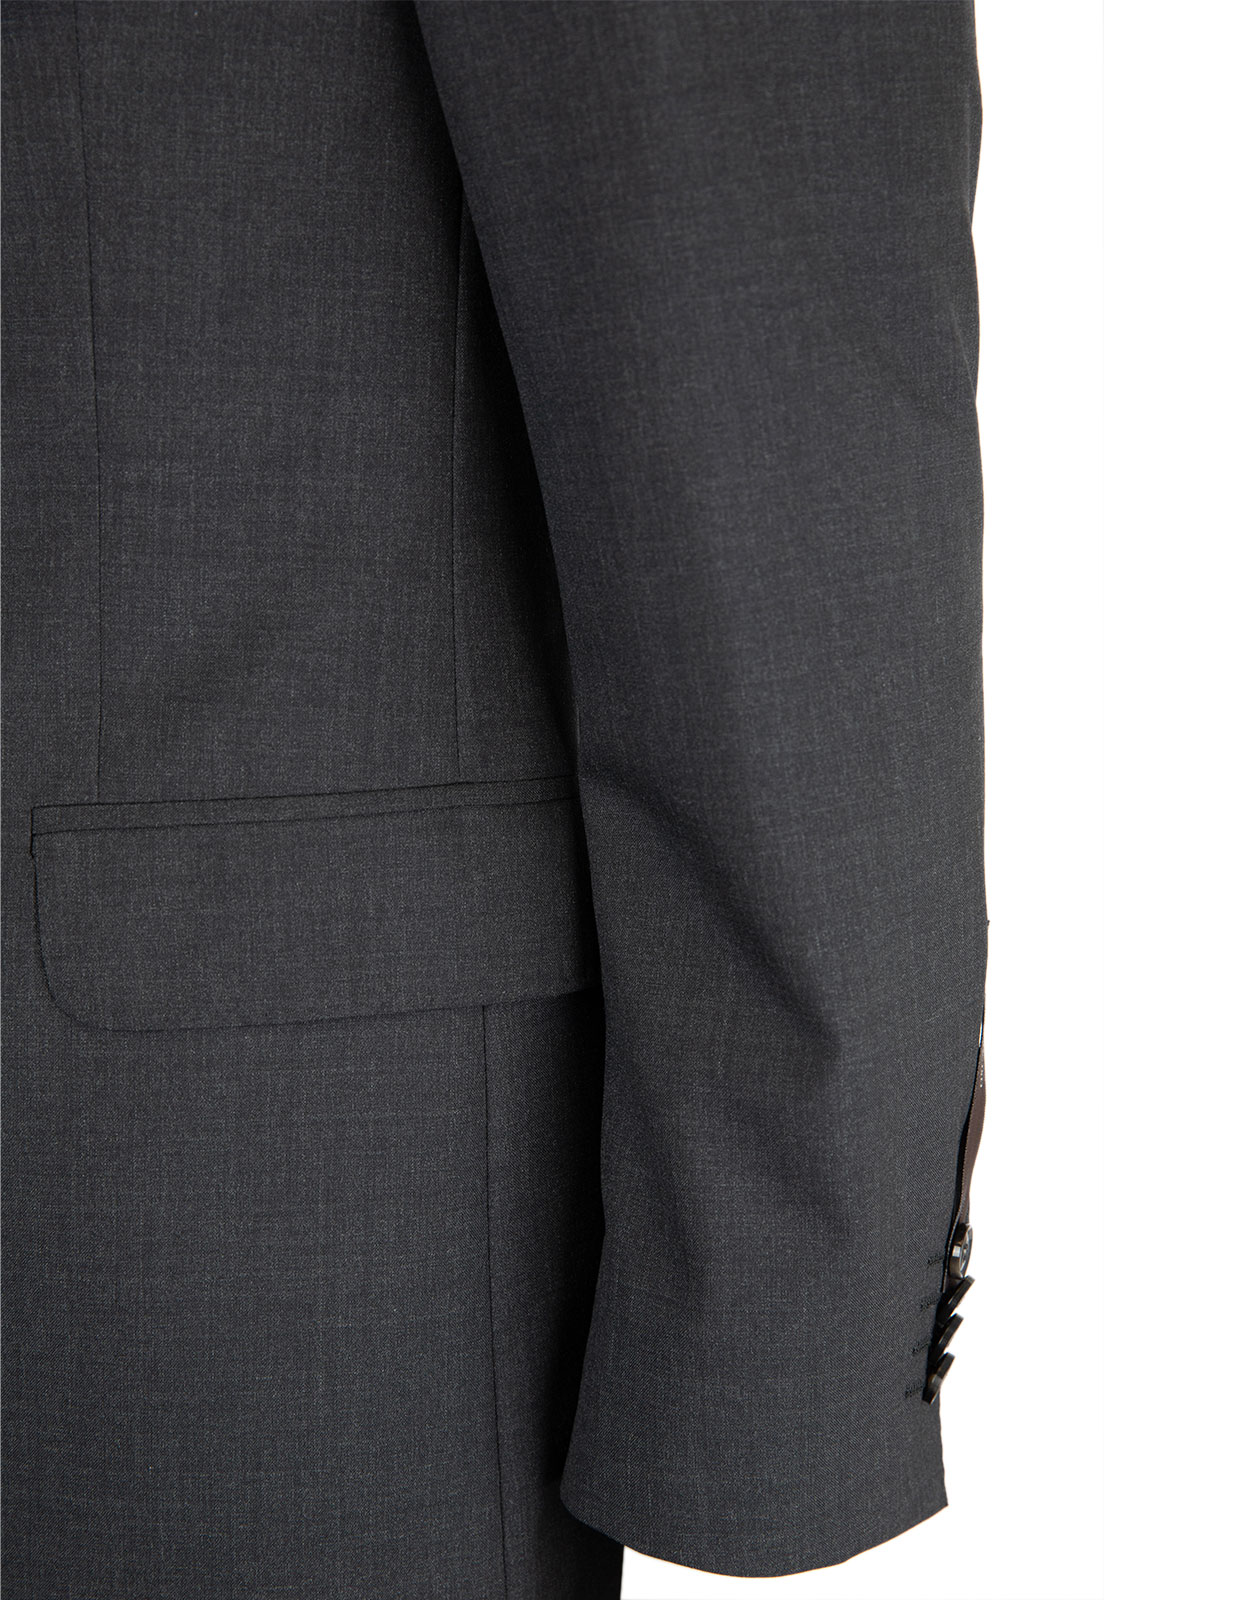 Edmund Suit Jacket Slim Fit Mix & Match Wool Dark Grey Stl 152